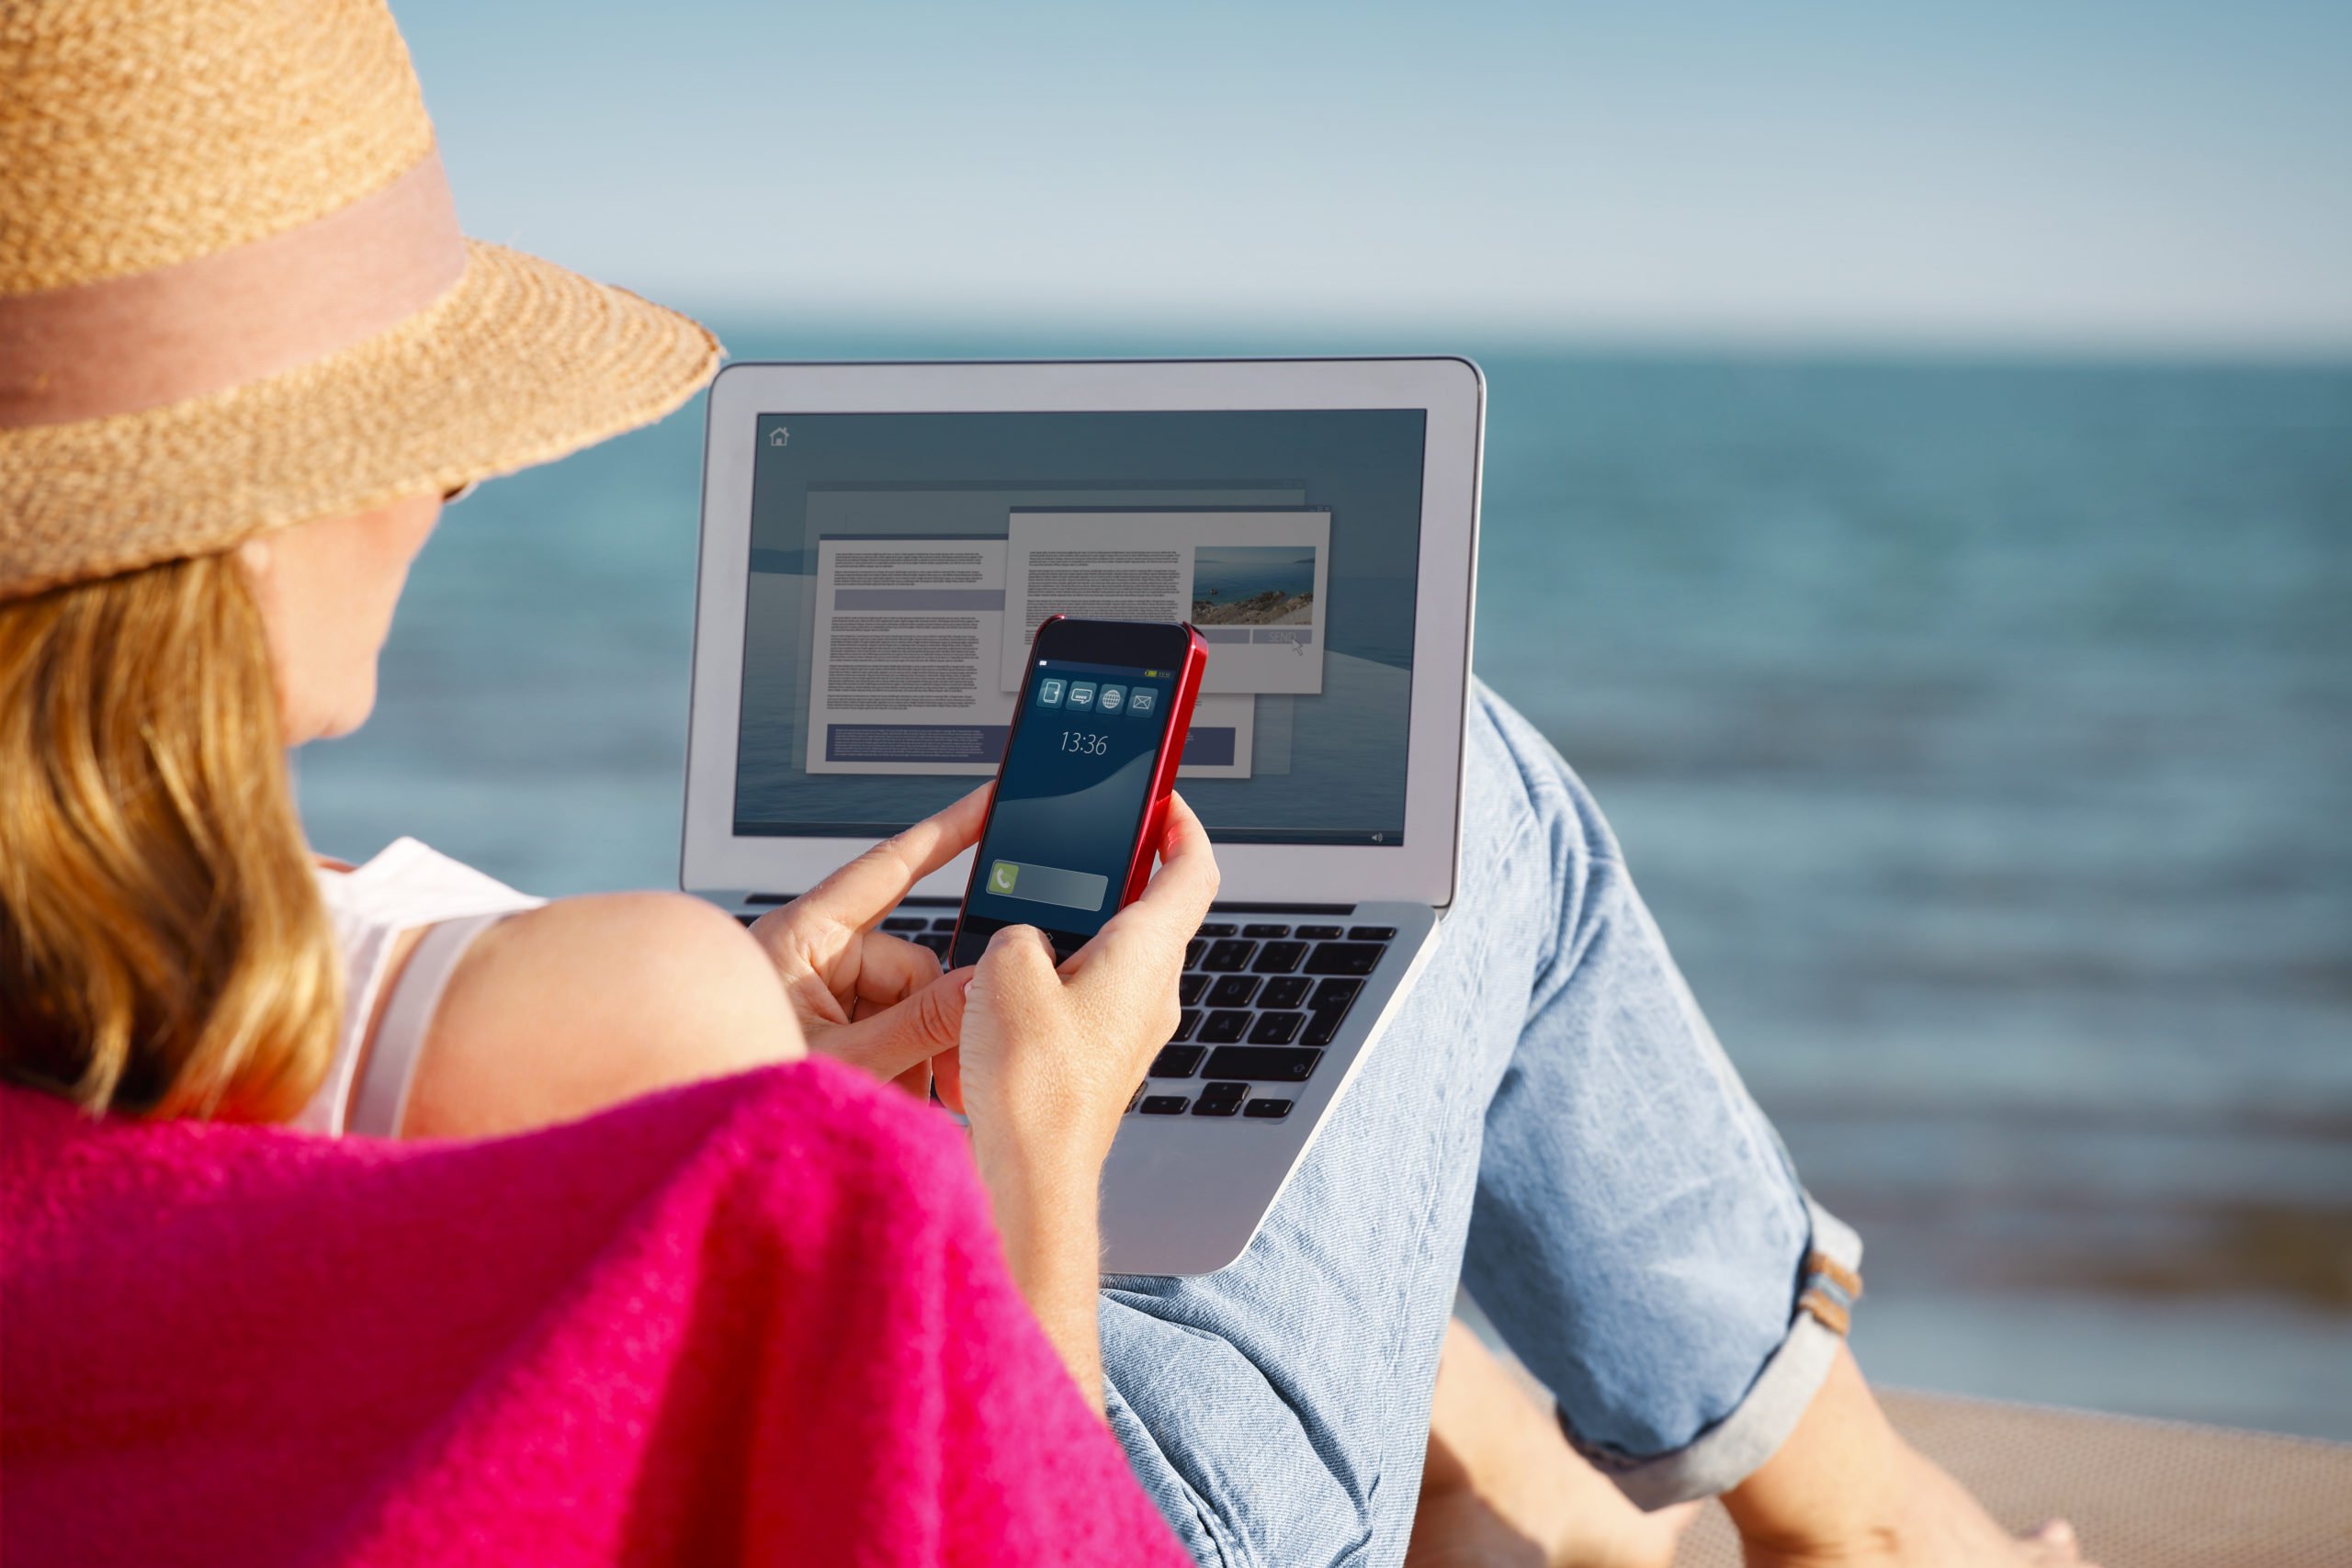 Travel related. Телефон на пляже. С ноутбуком на пляже. Женщина на пляже с телефоном. Работа на пляже с телефоном.